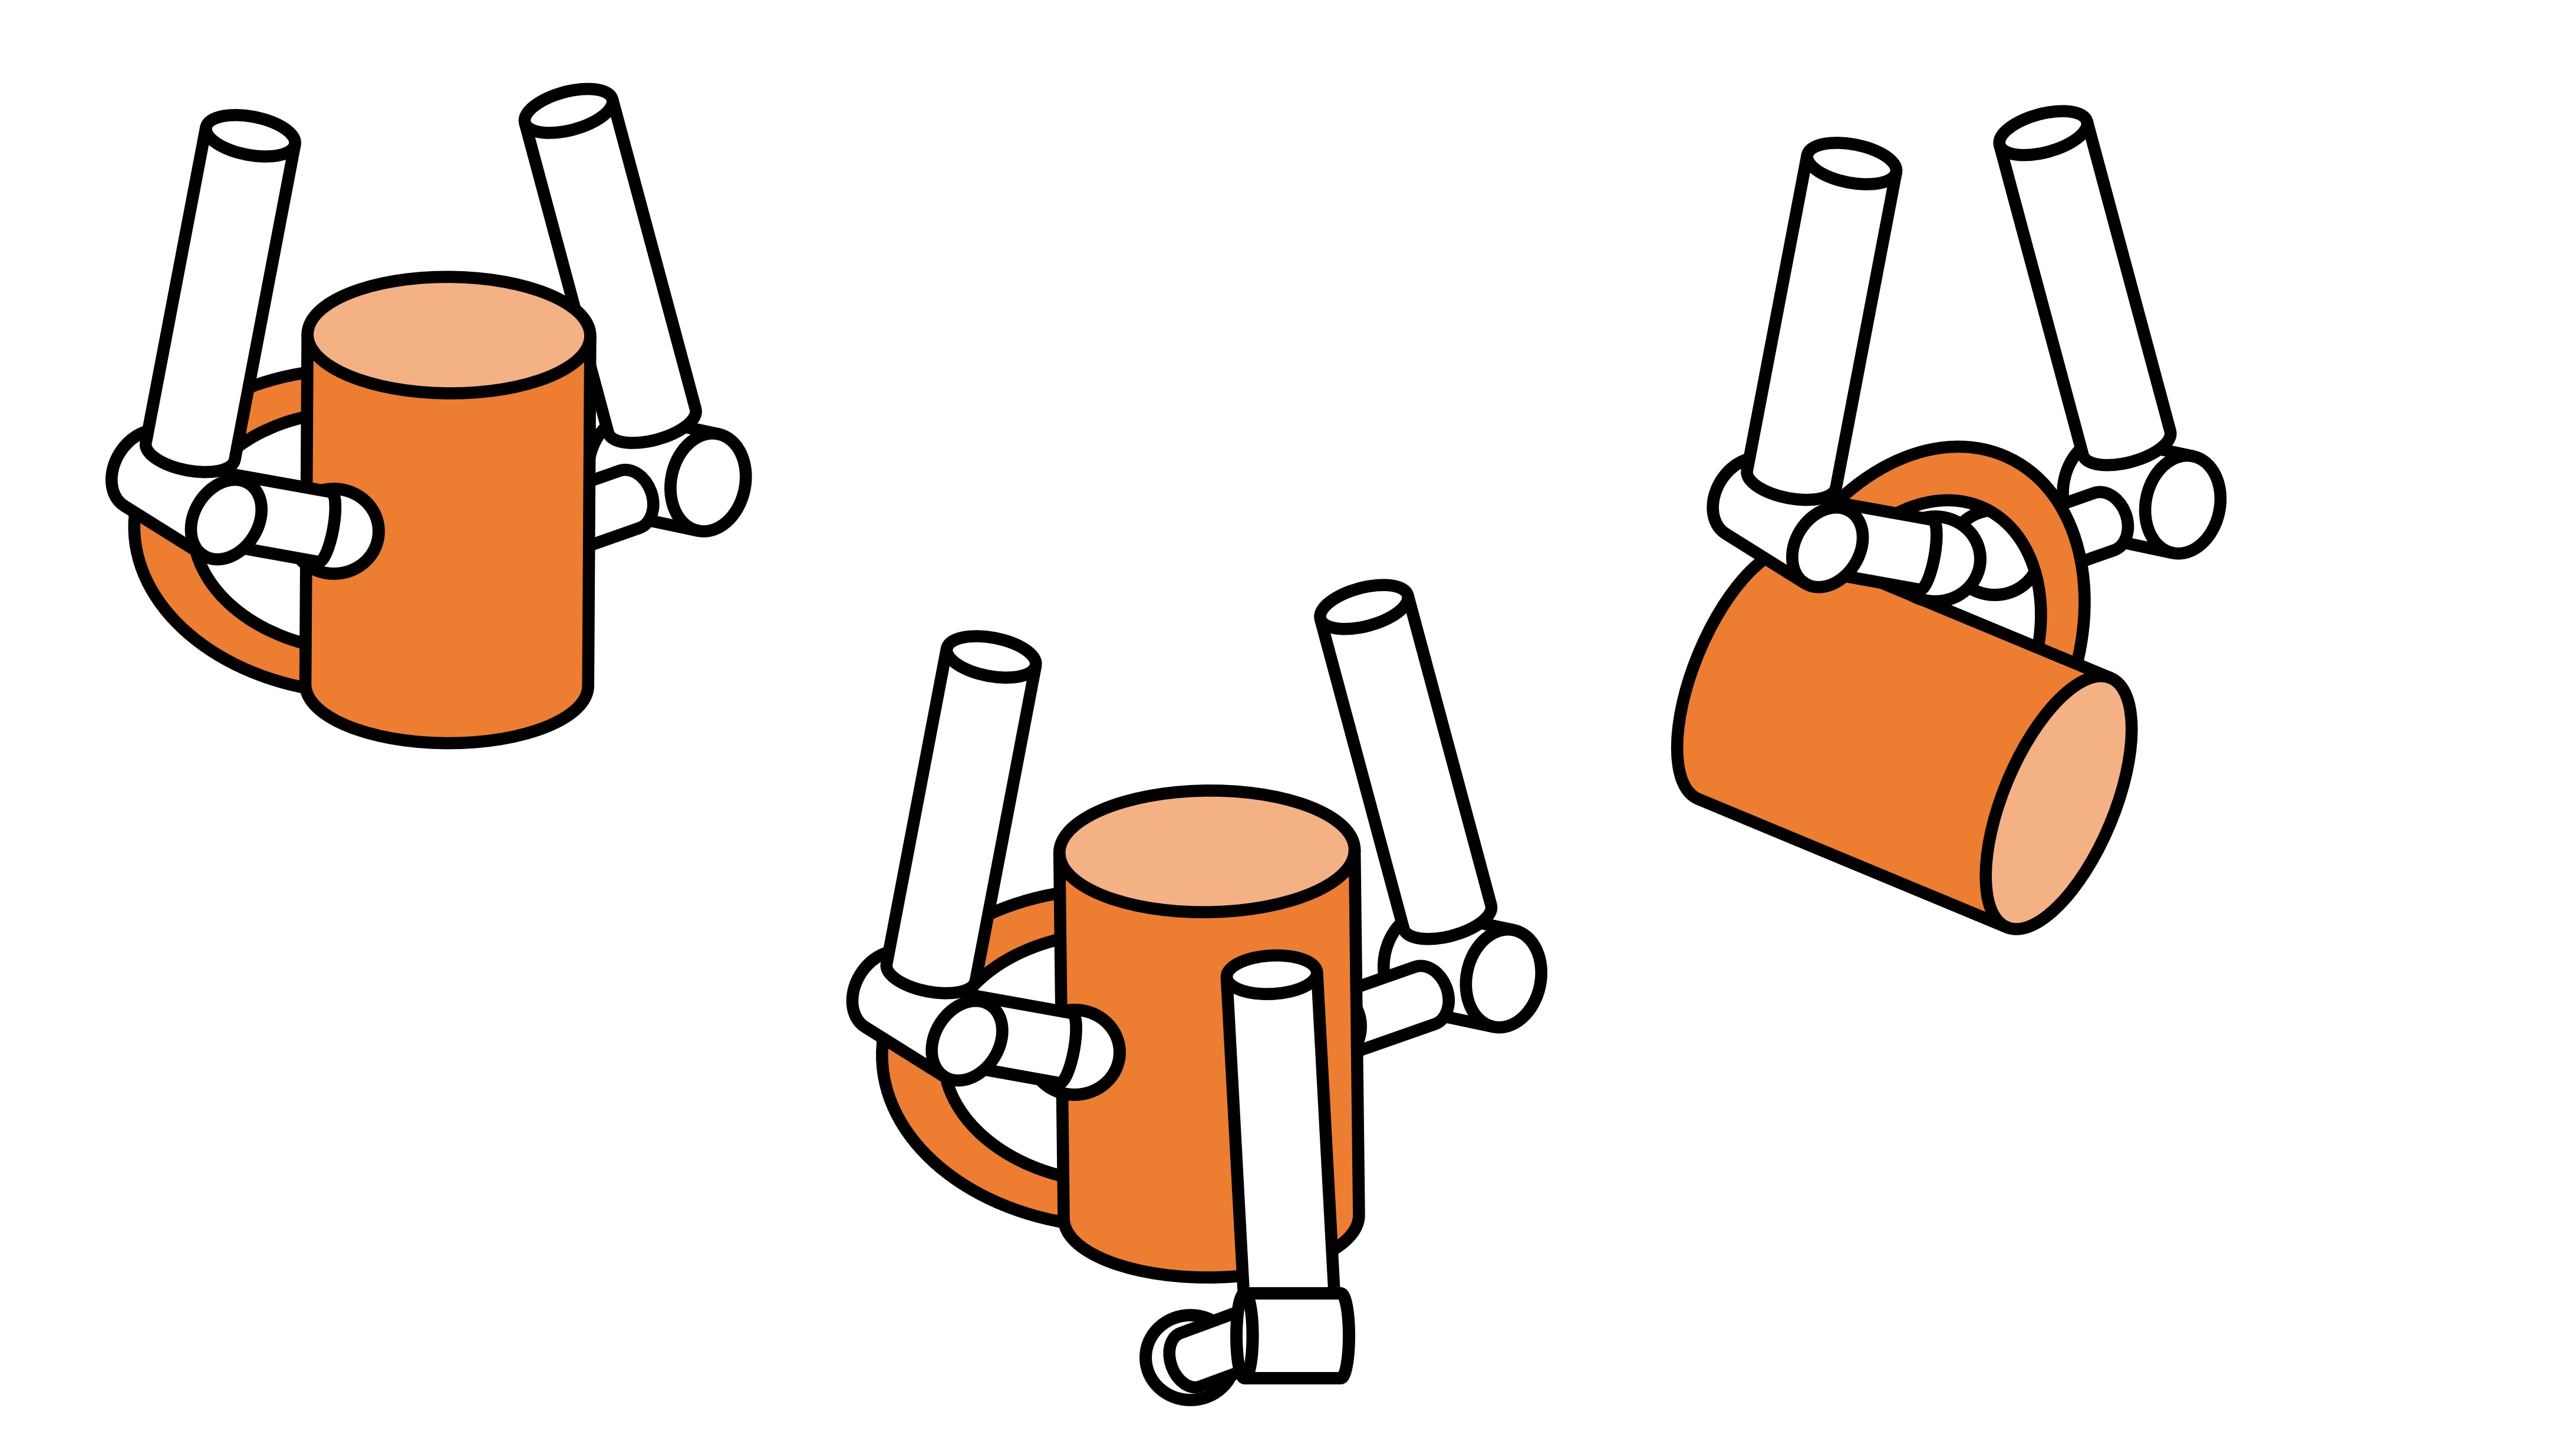 さまざまな把持形態。（左）ロボットの指先でつかむ、（中央）物体を把持しつつ下方に手を添える、（右）物体の穴に引っかけて持つ。